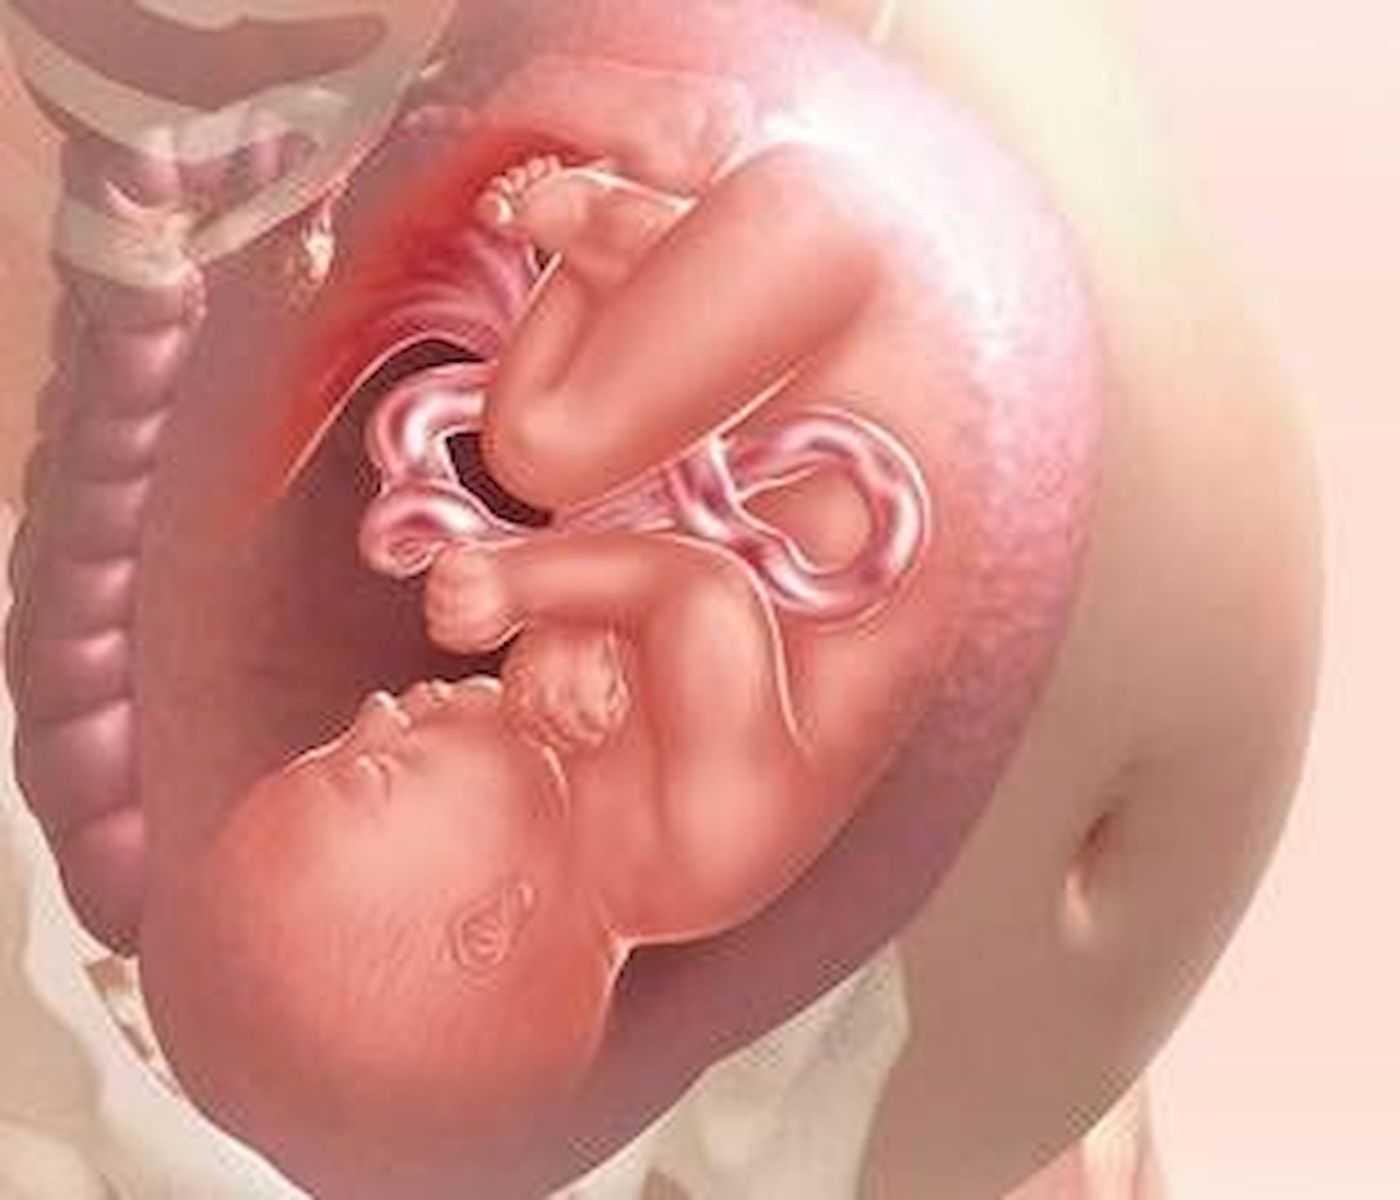 Роды на 37 неделе беременности: особенности и мнение врачей, последствия на этом сроке, отзывы